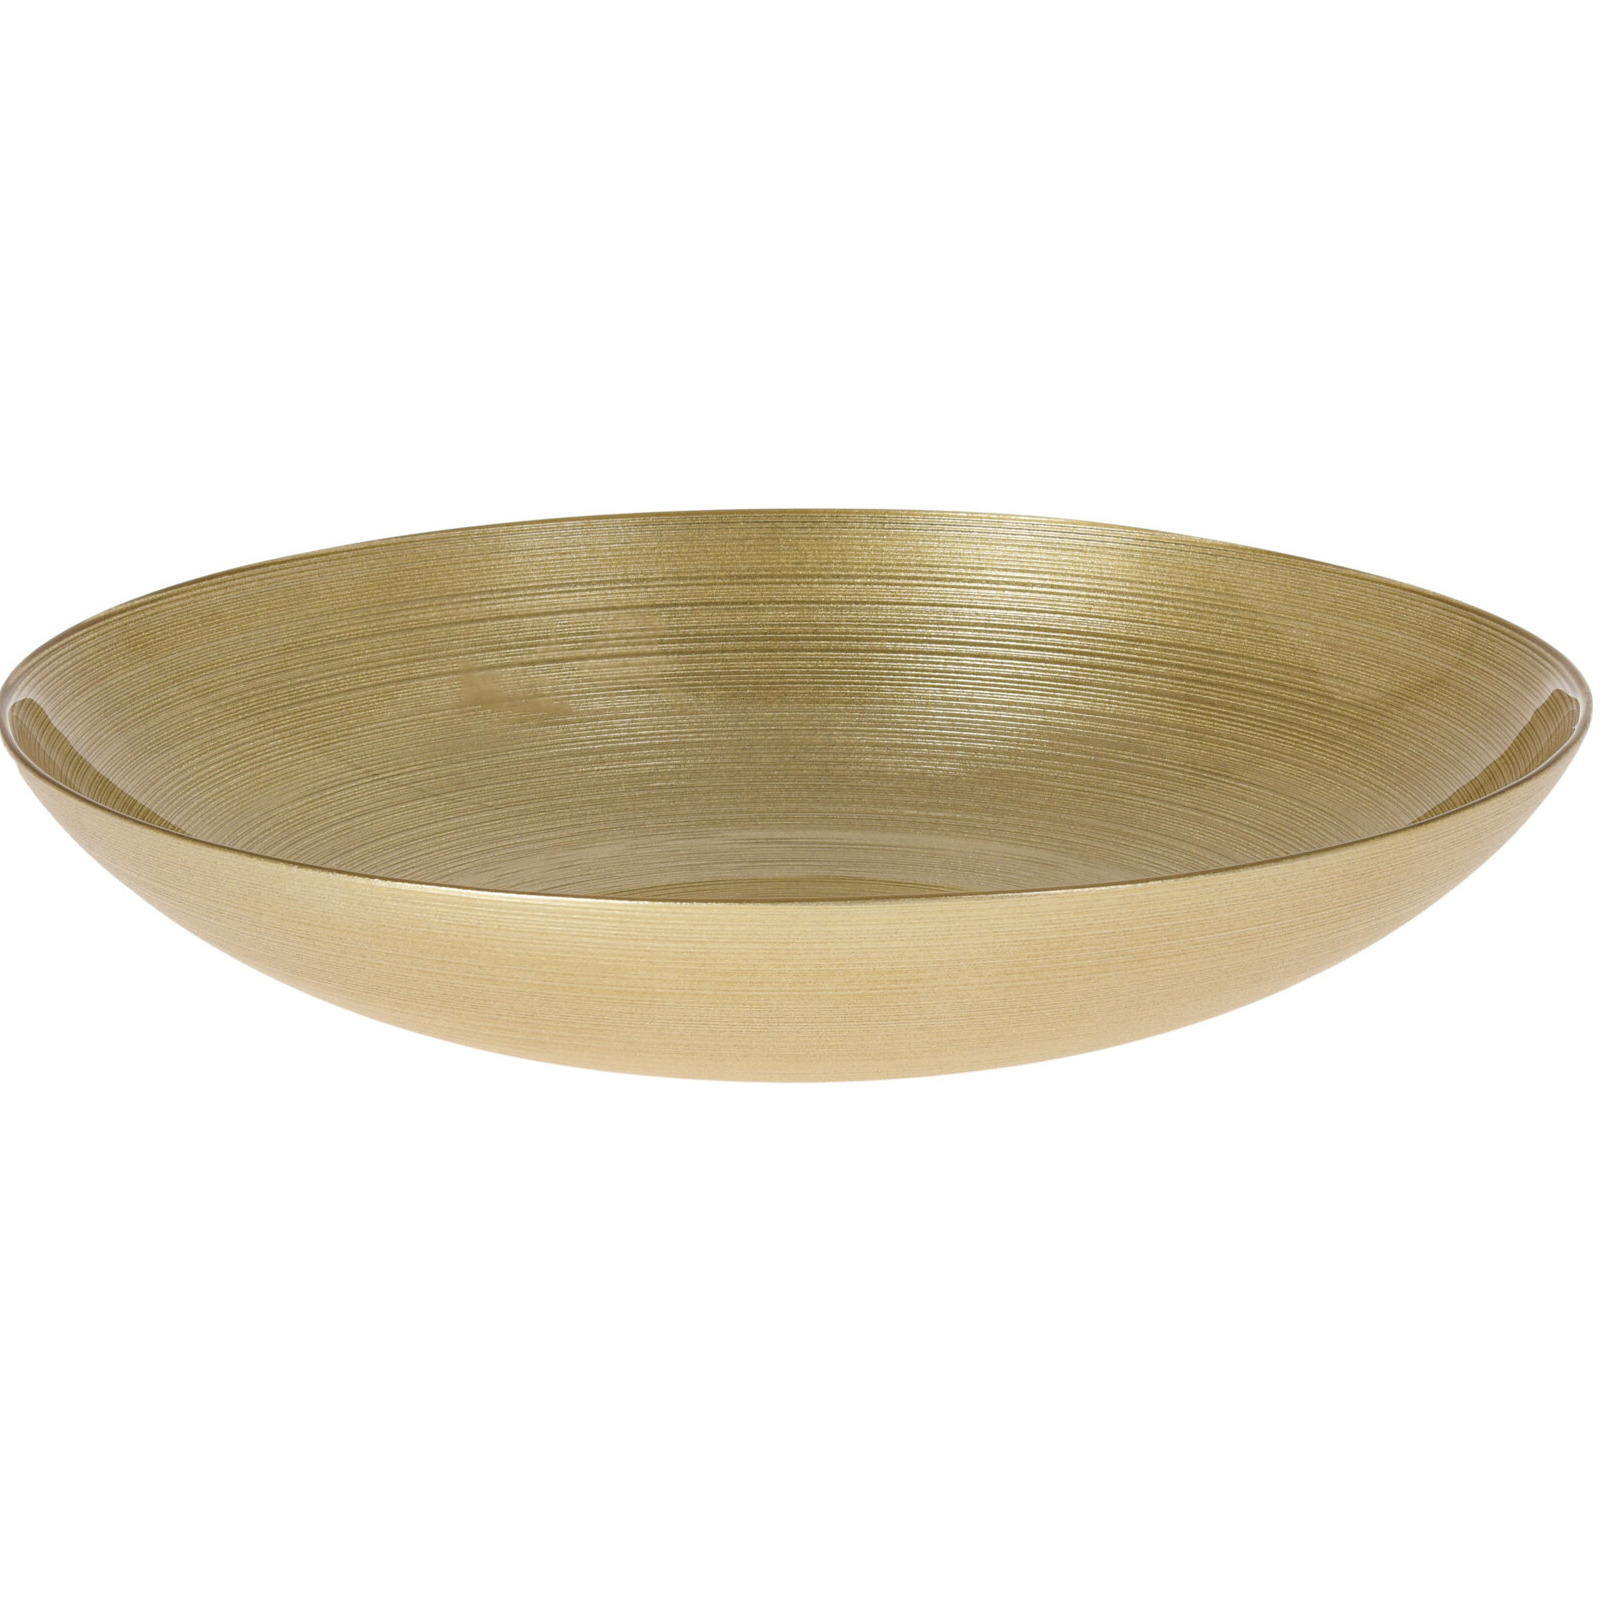 Merkloos Glazen decoratie schaal/fruitschaal goud rond D30 cm -